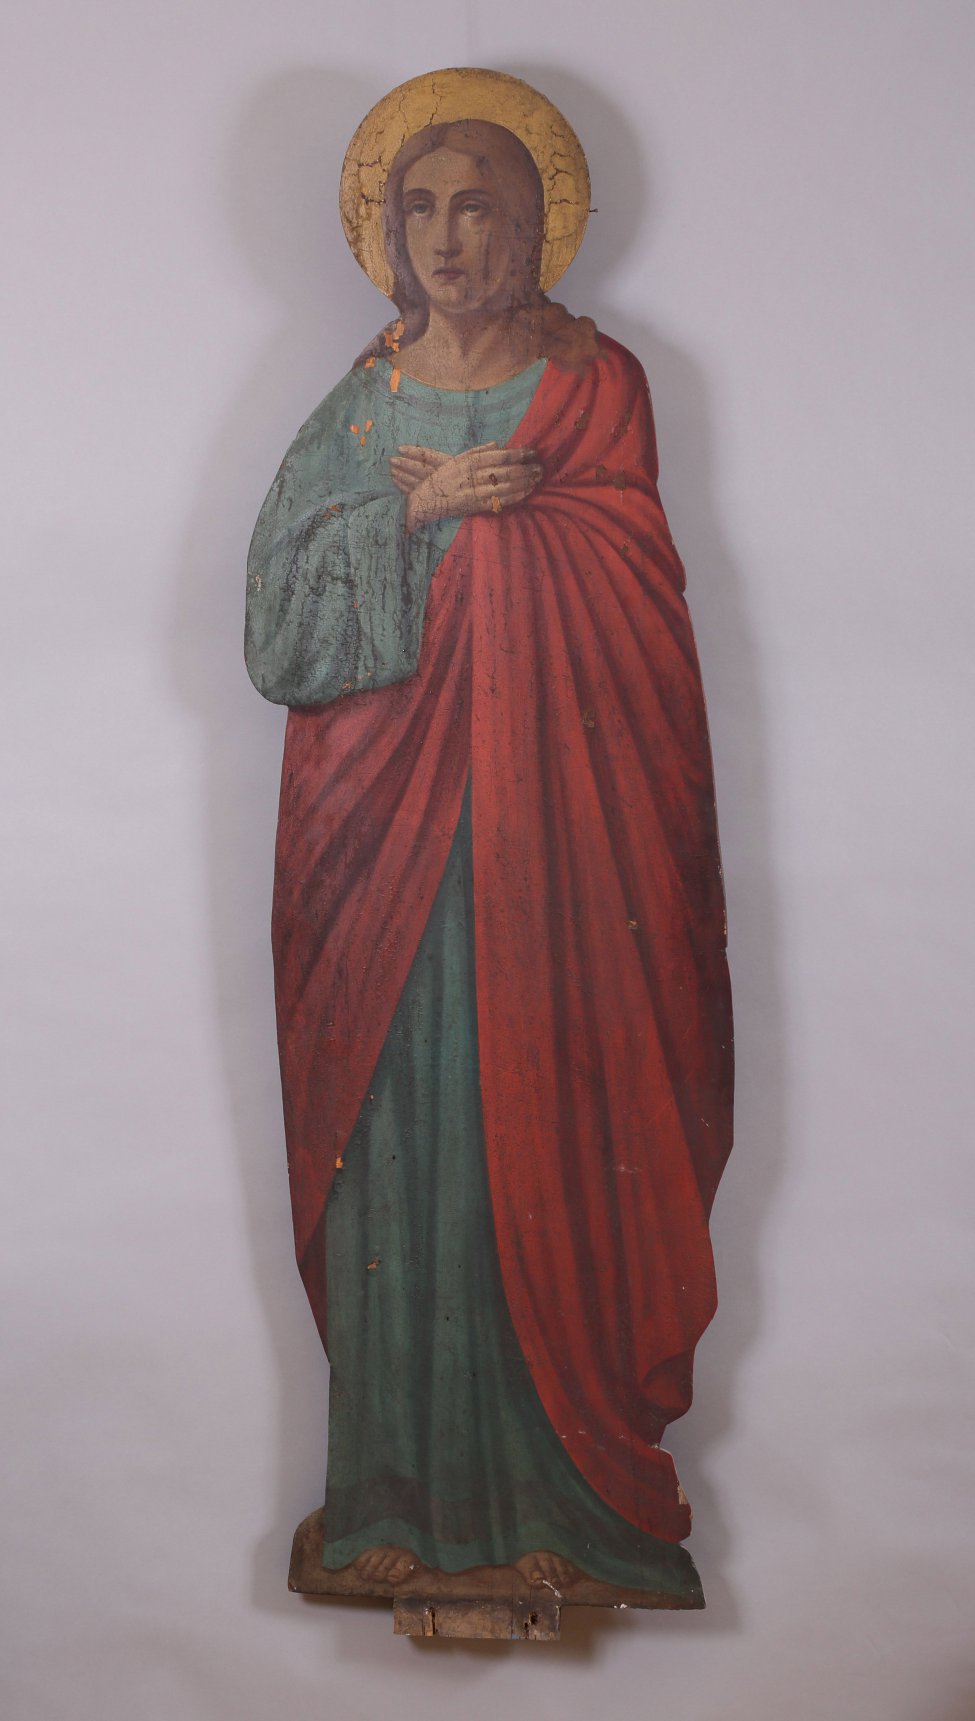 Фигура Иоанна Богослова исполнена живописно по дереву. Богослов изображен со скрещенными на груди руками, в зеленом хитоне и красном гиматии. Над головой - нимб.